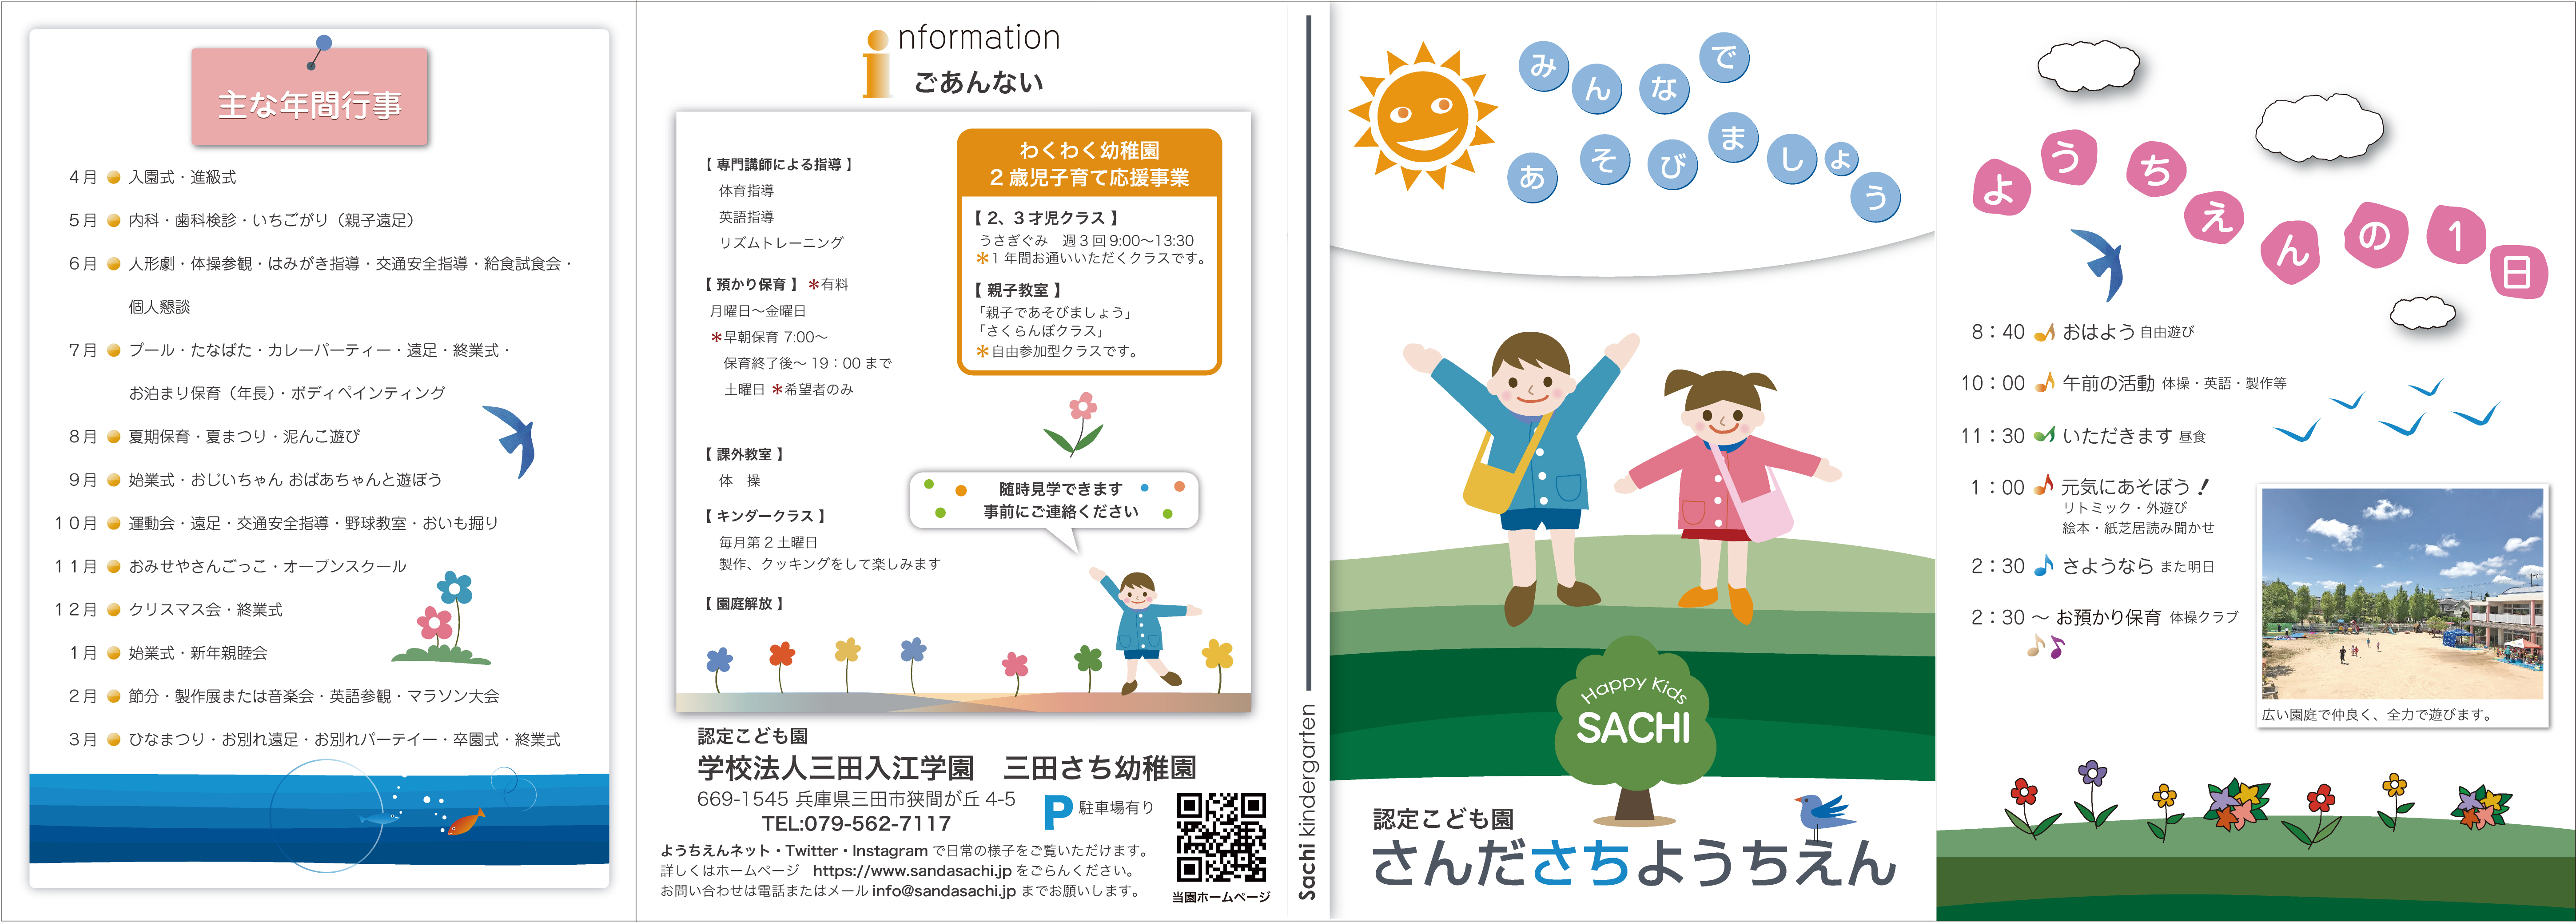 パンフレット制作 カタログ制作を大阪や京都、神戸に紹介するパンフレットの画像